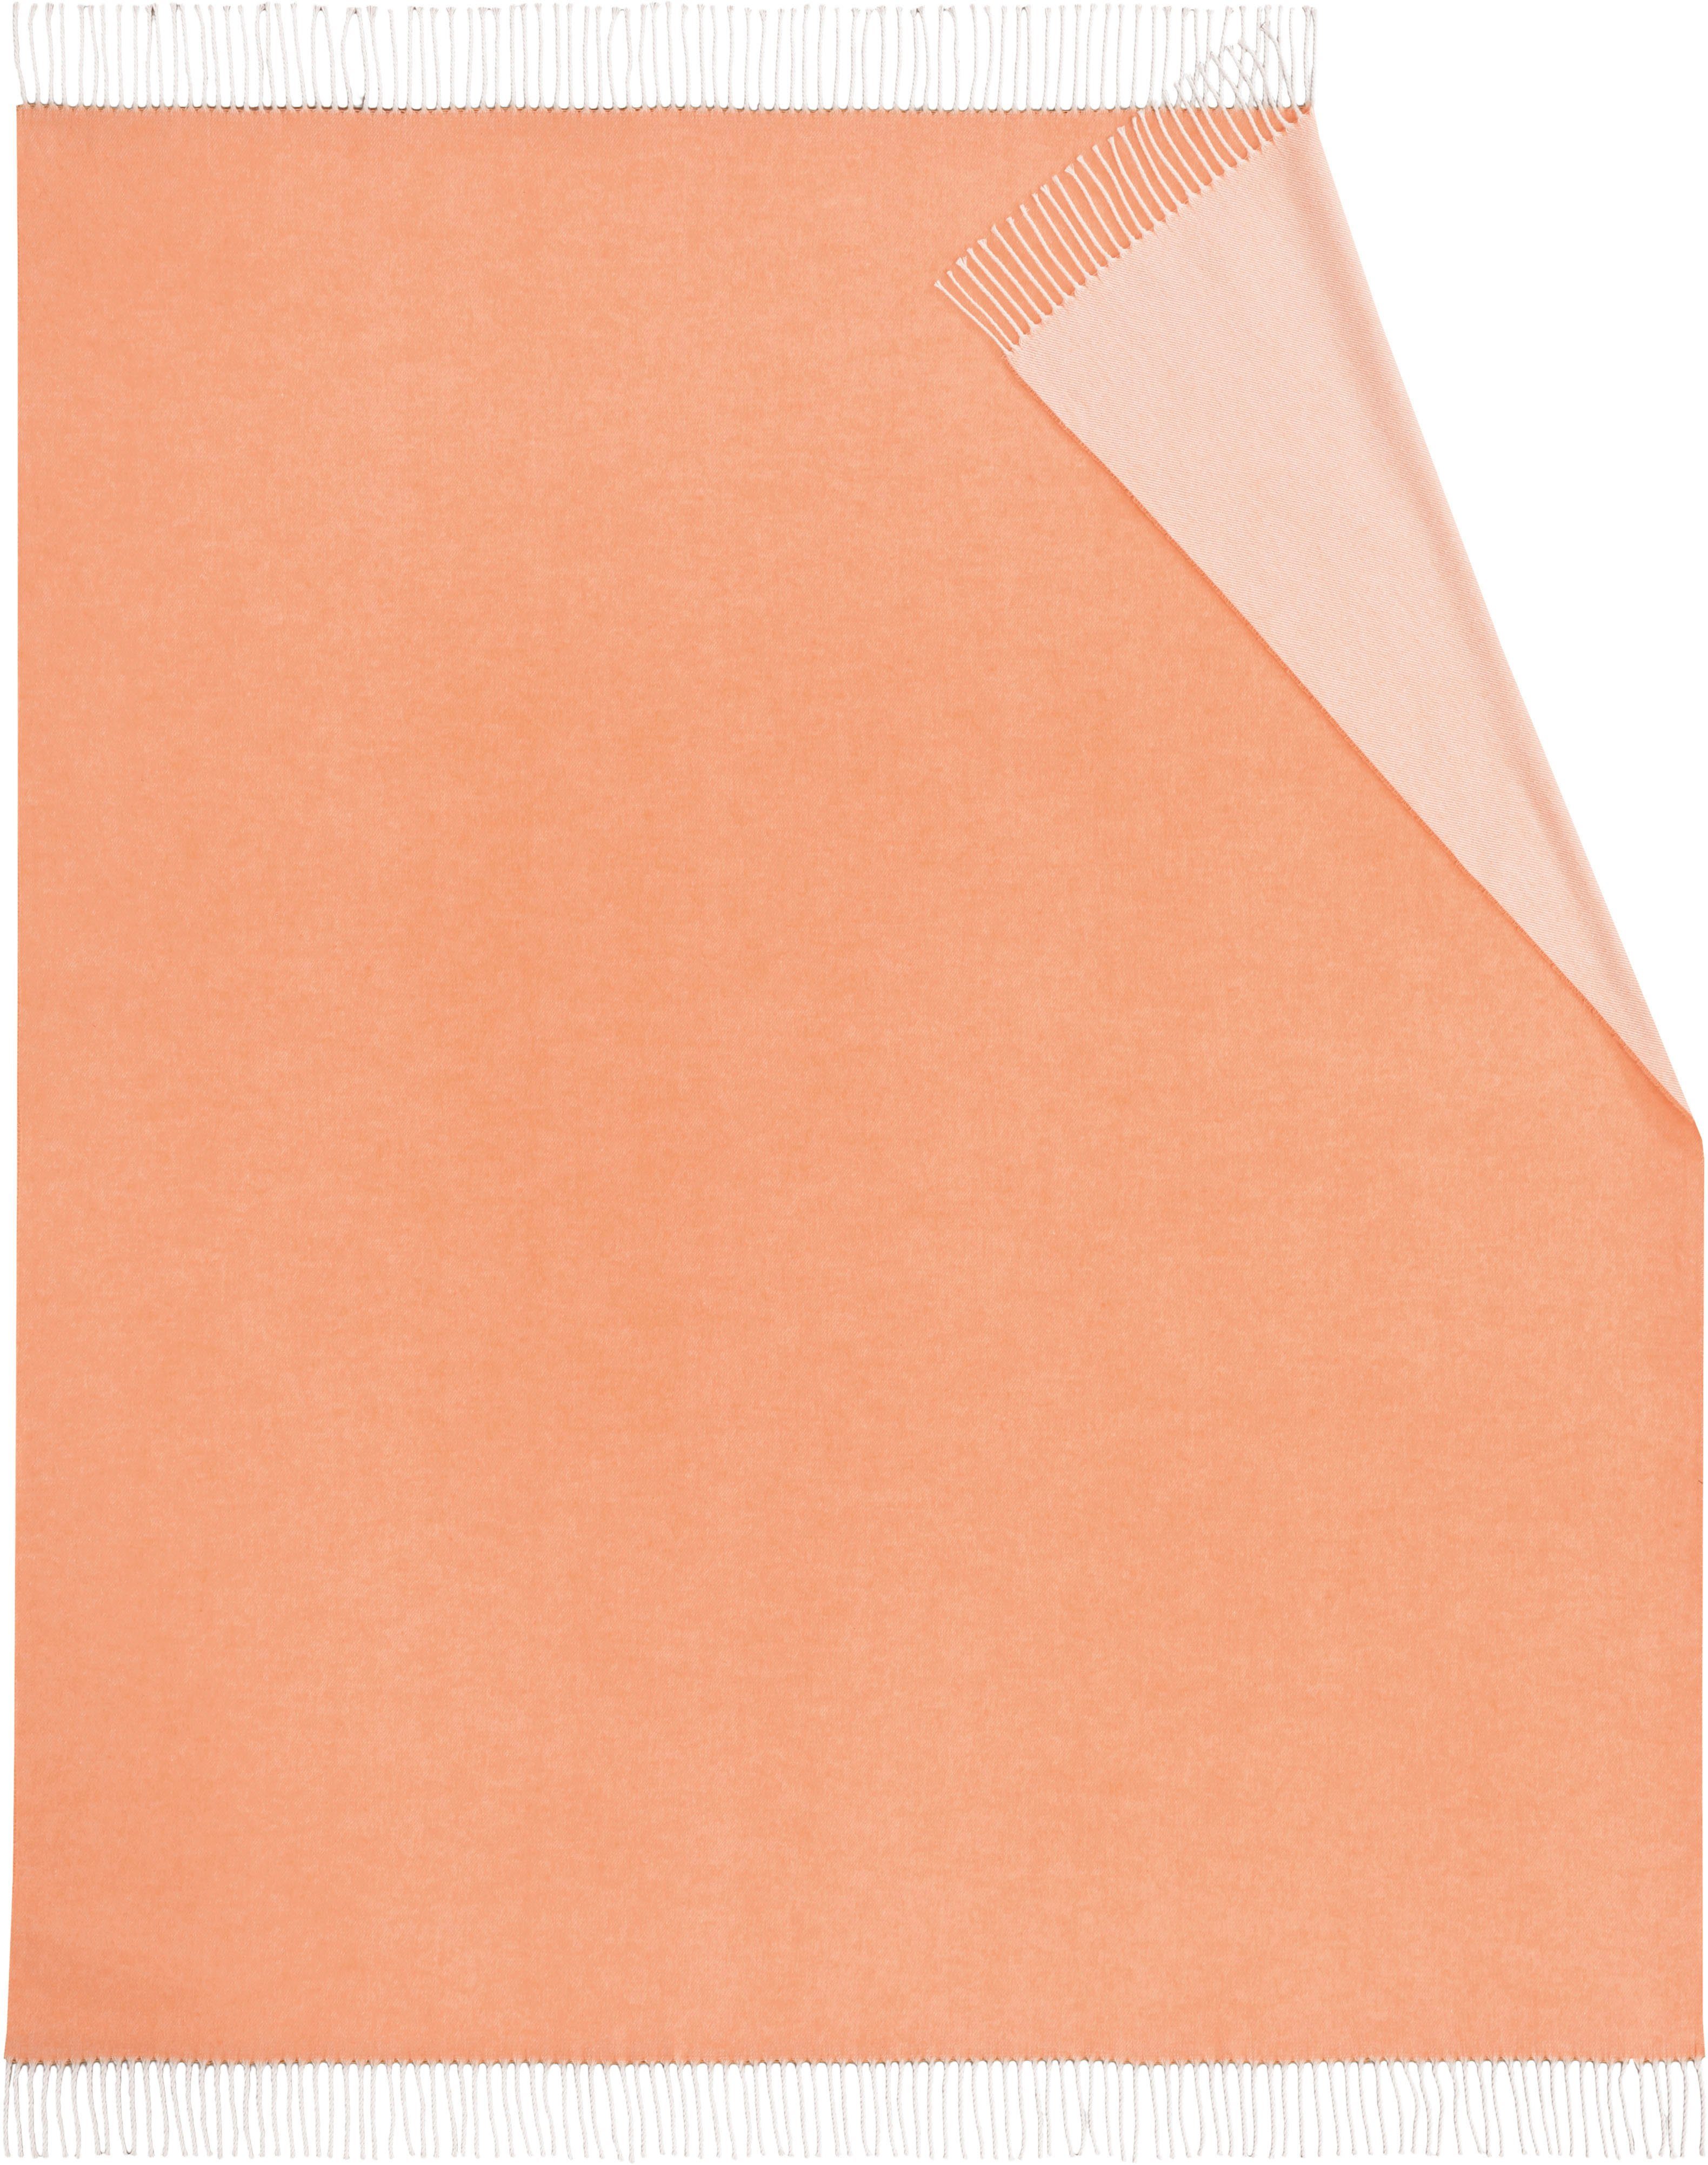 Kuscheldecke Plaid Biederlack, Twill, Uni-Farben, mit orange frischen